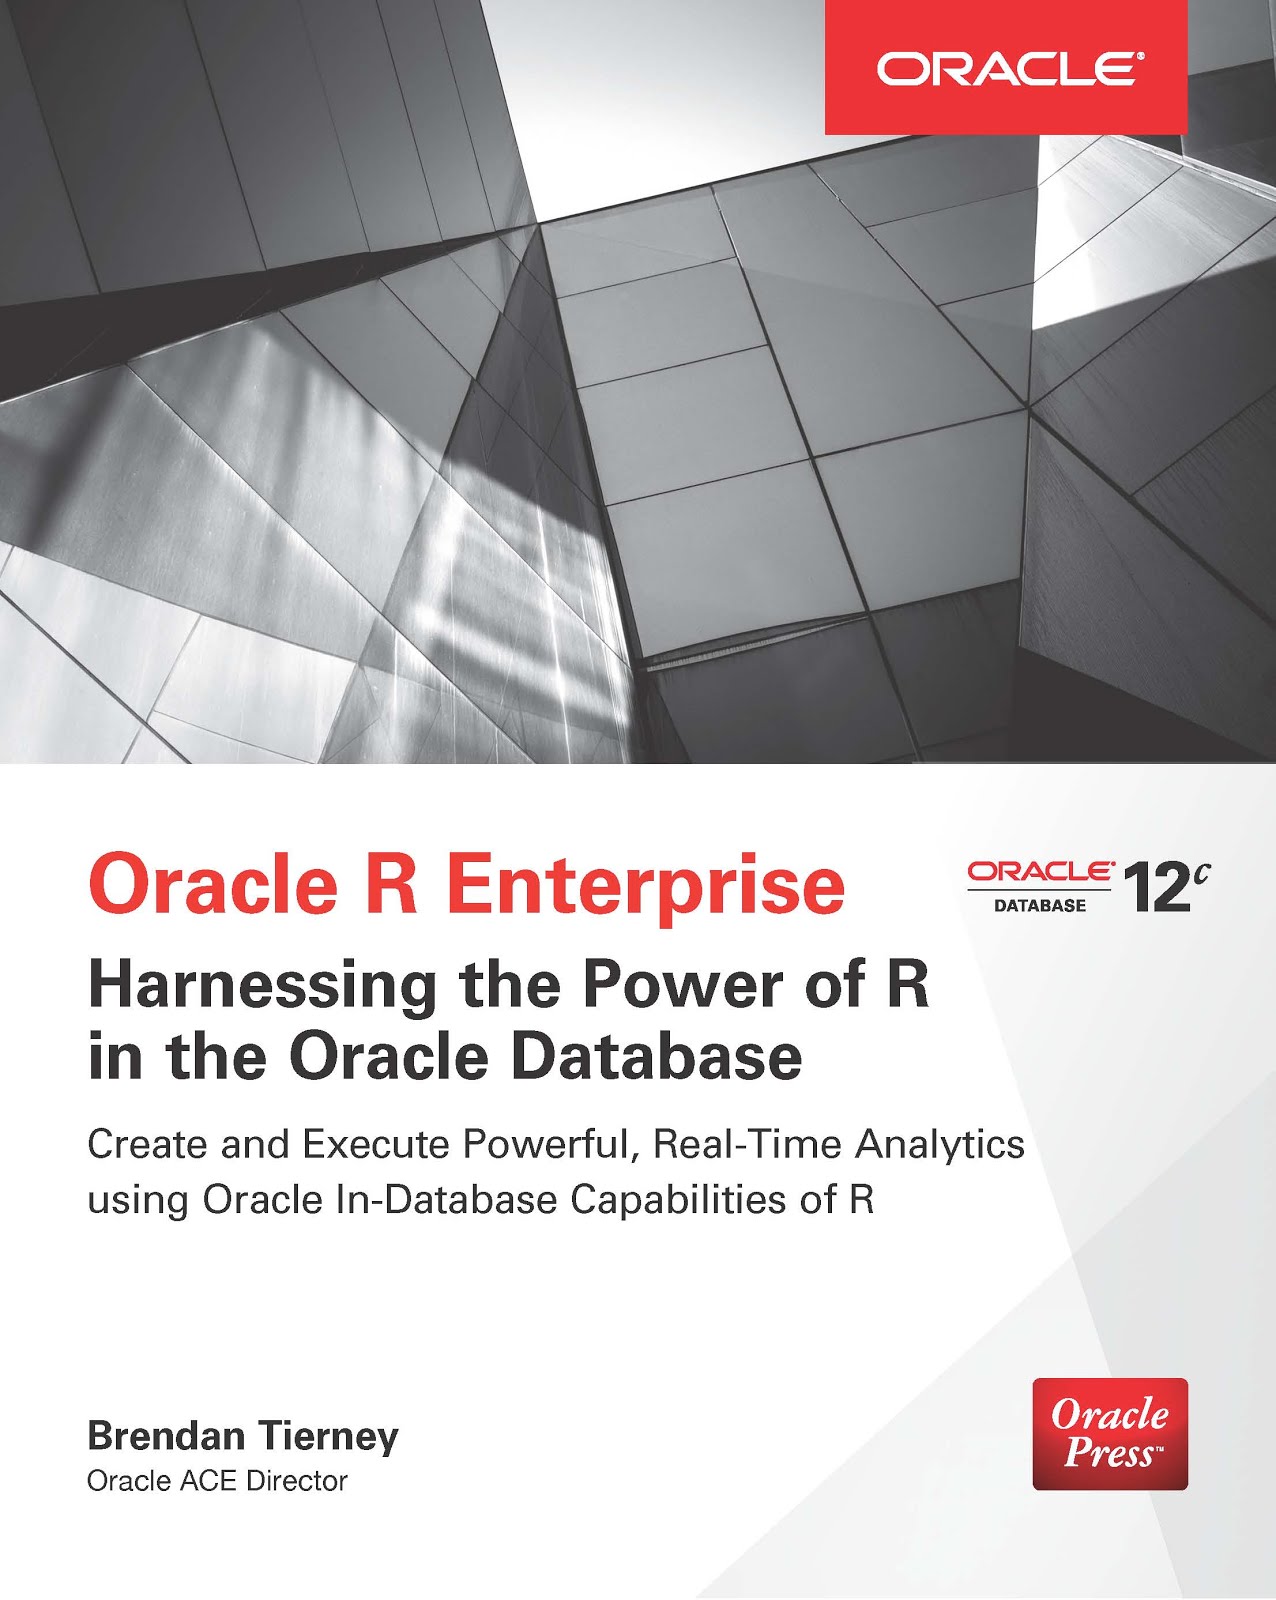 Buy my Oracle R Enterprise Book